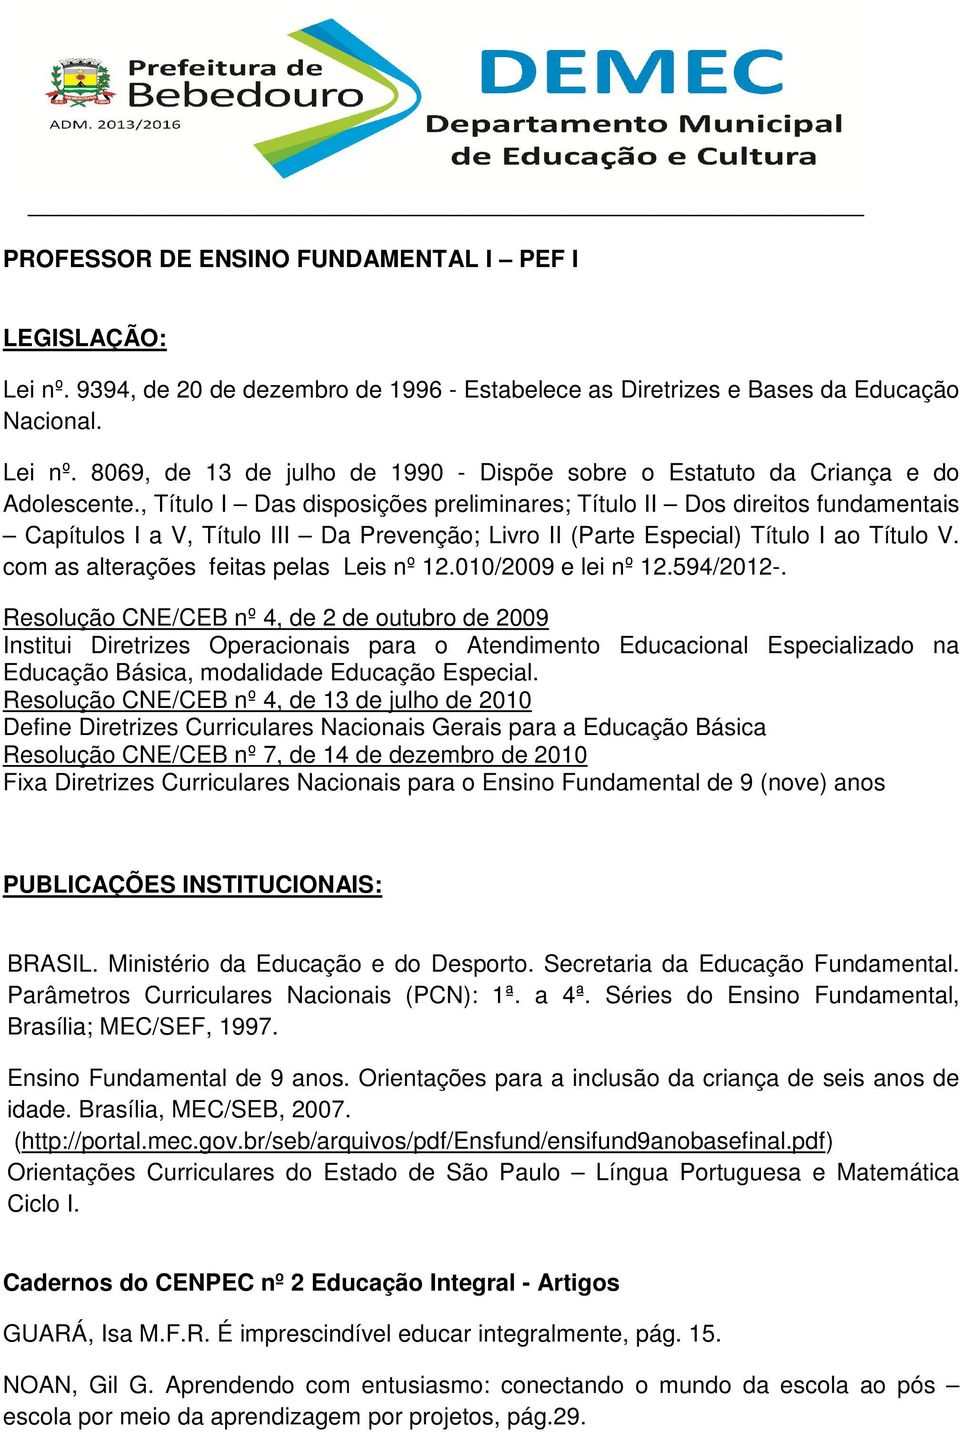 Resolução CNE/CEB nº 4, de 13 de julho de 2010 Define Diretrizes Curriculares Nacionais Gerais para a Educação Básica Resolução CNE/CEB nº 7, de 14 de dezembro de 2010 Fixa Diretrizes Curriculares